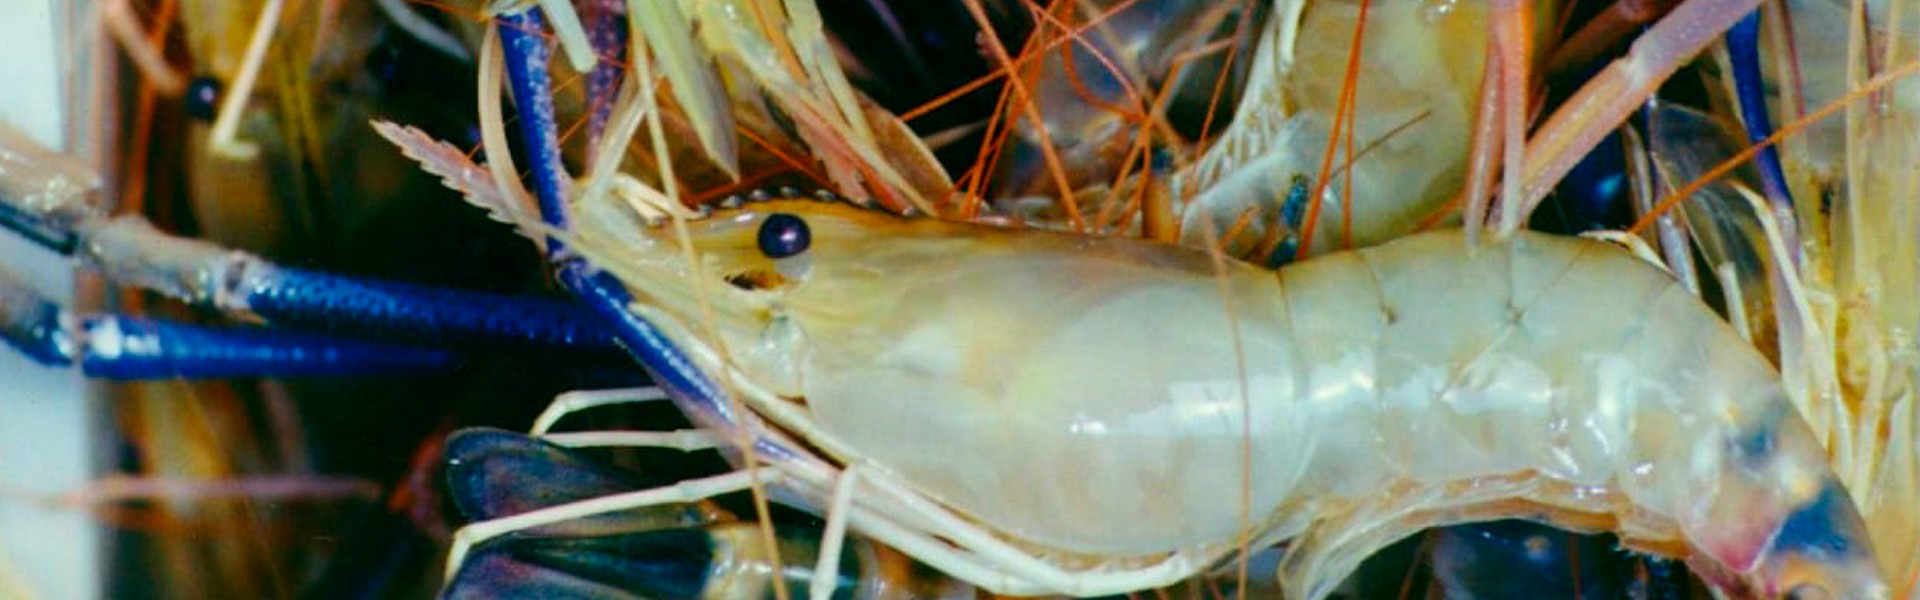 Instituto de Pesca oferece curso sobre criação de camarões em água doce